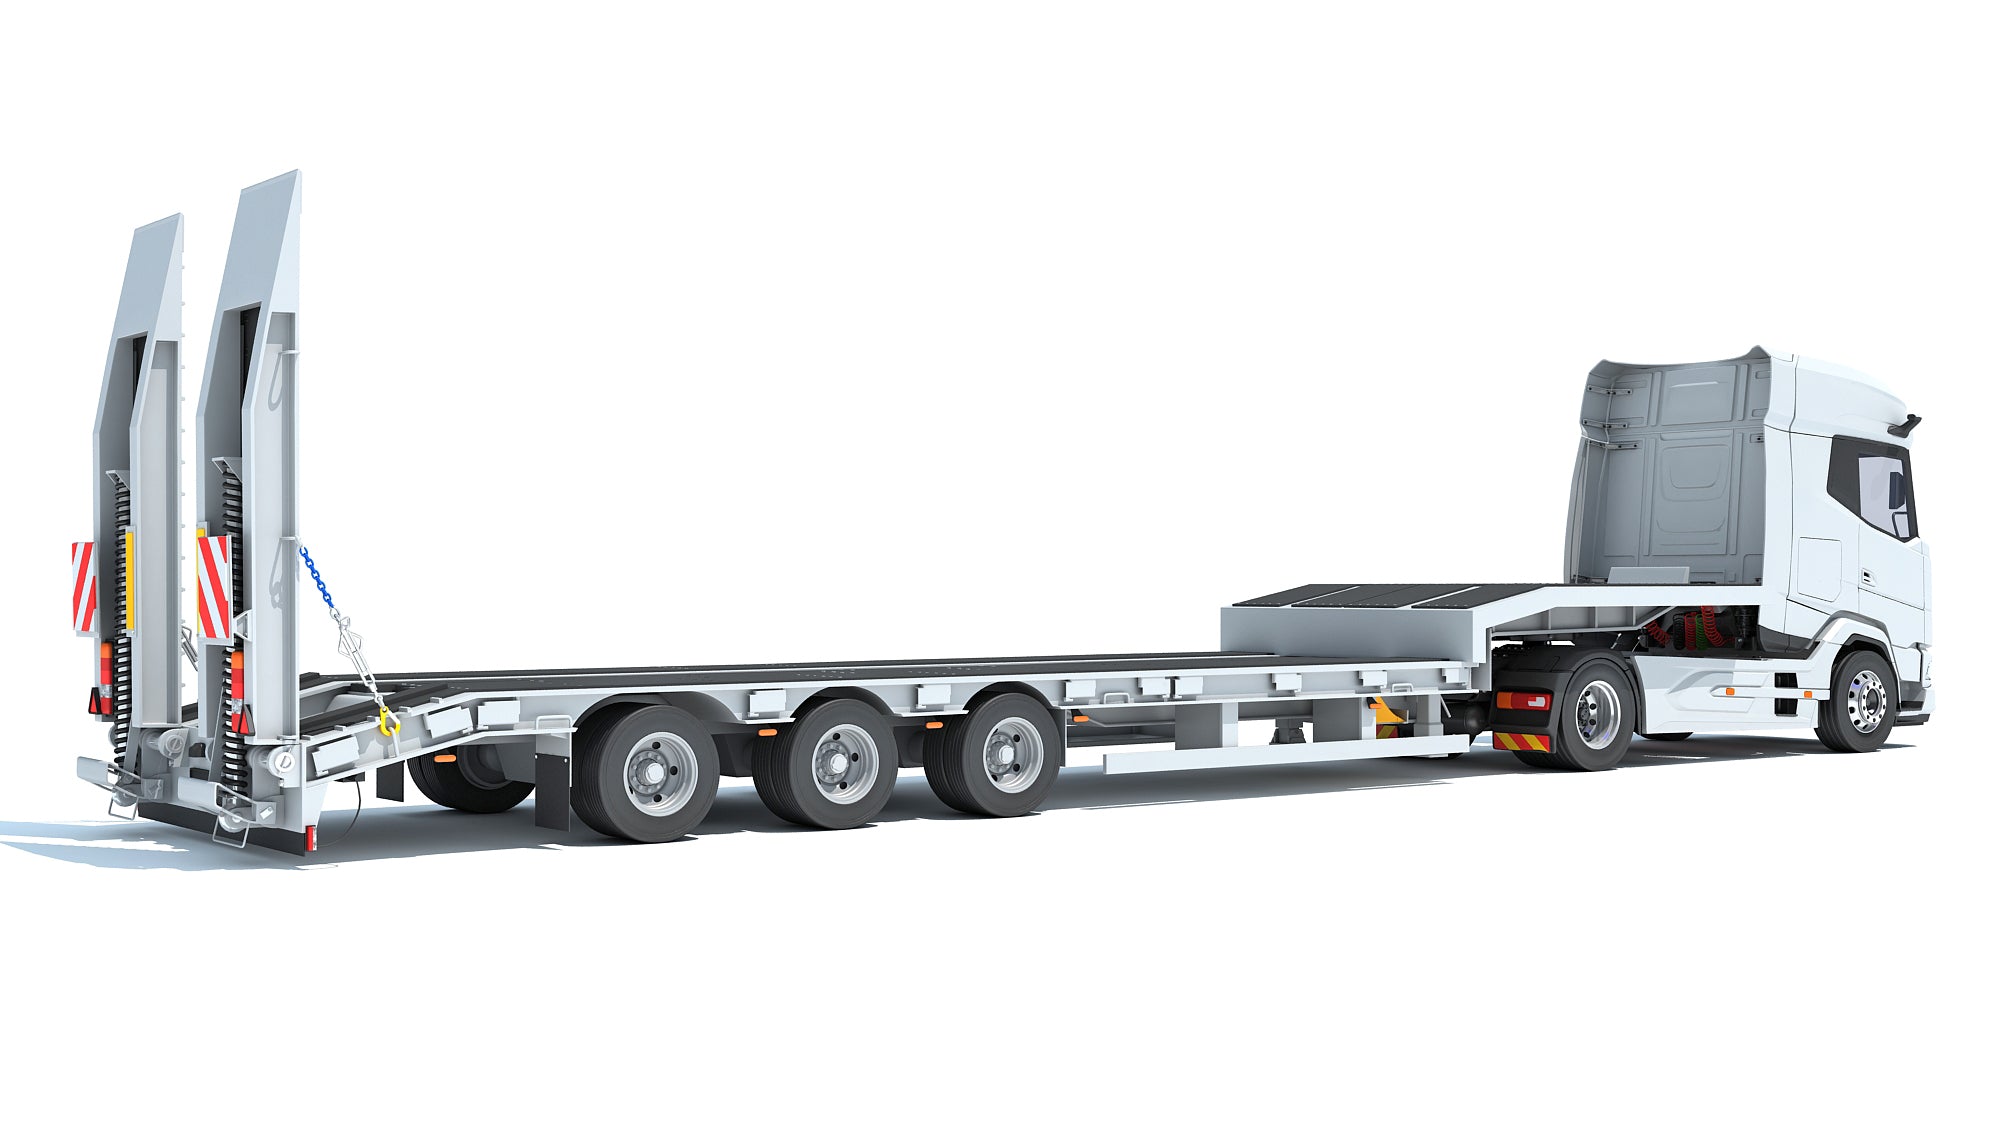 DAF Truck with Platform Trailer